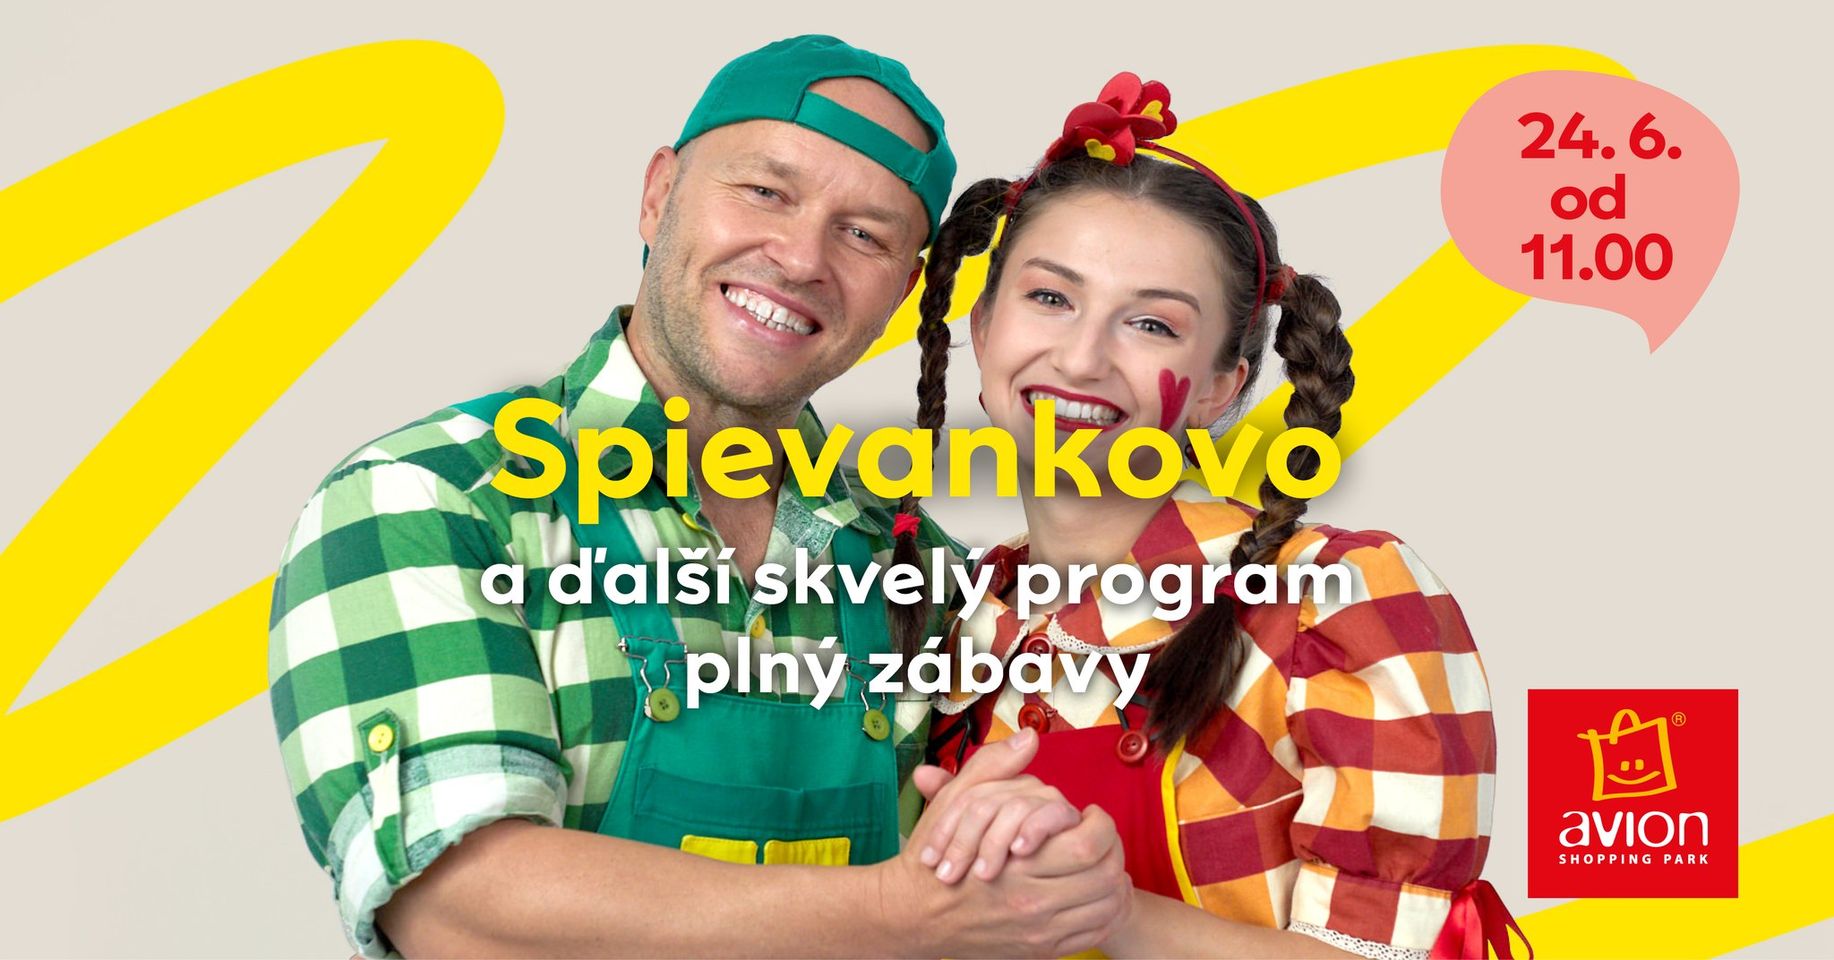 Spievankovo a ďalší skvelý program plný zábavy Avion Shopping Park Bratislava